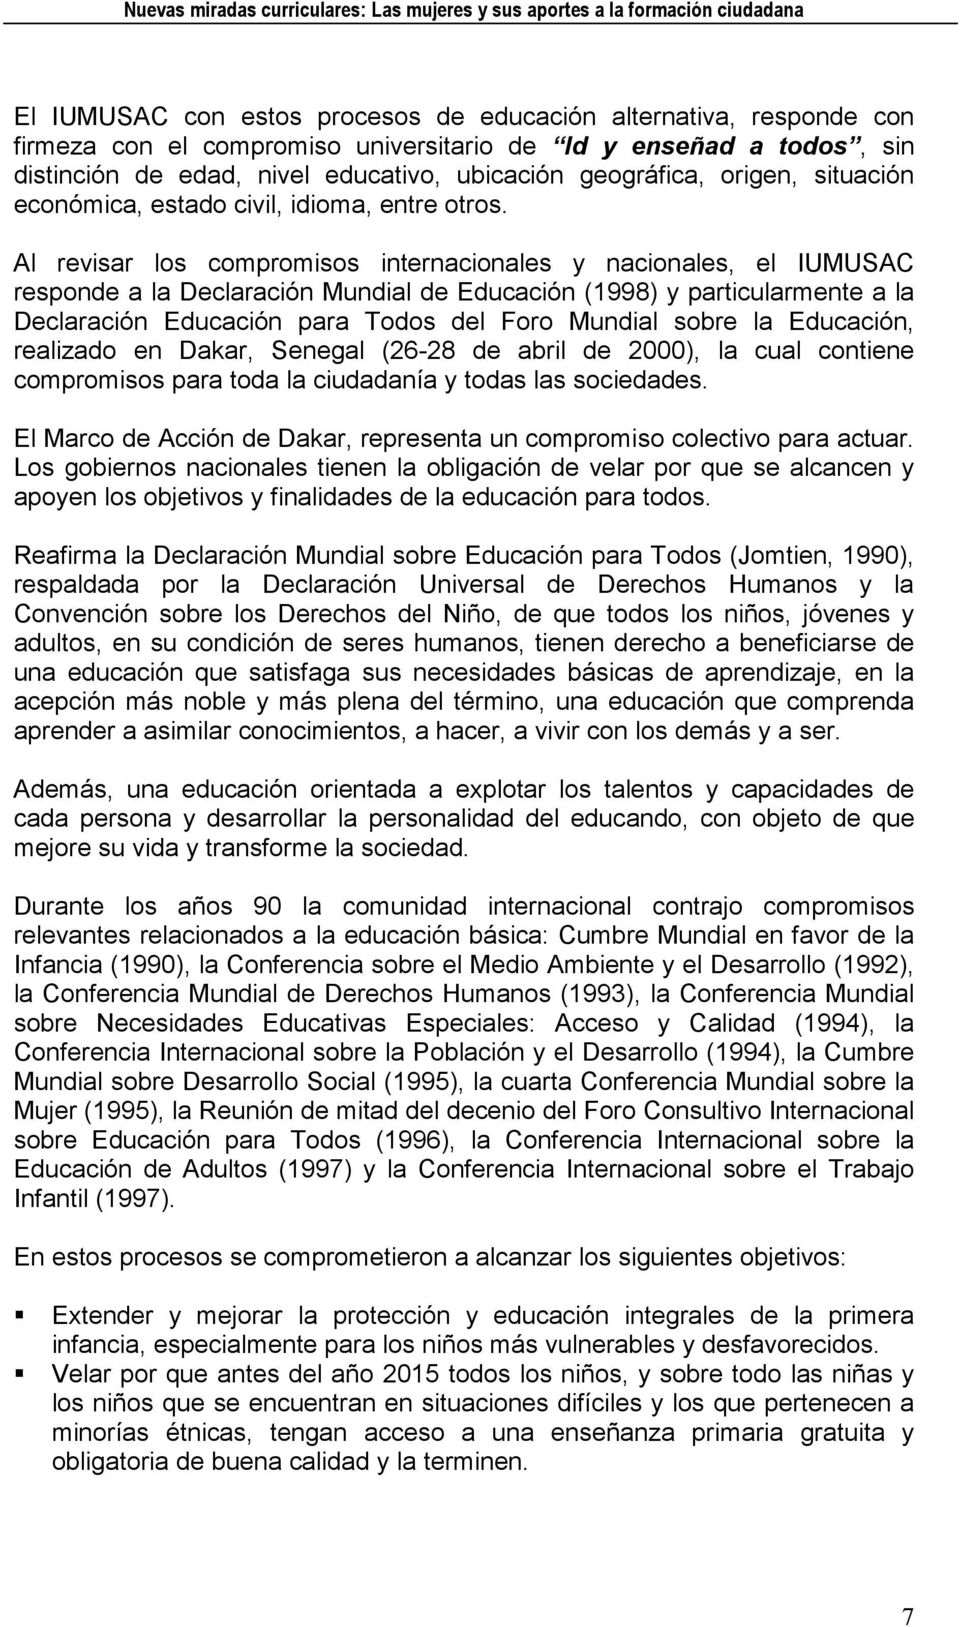 Al revisar los compromisos internacionales y nacionales, el IUMUSAC responde a la Declaración Mundial de Educación (1998) y particularmente a la Declaración Educación para Todos del Foro Mundial